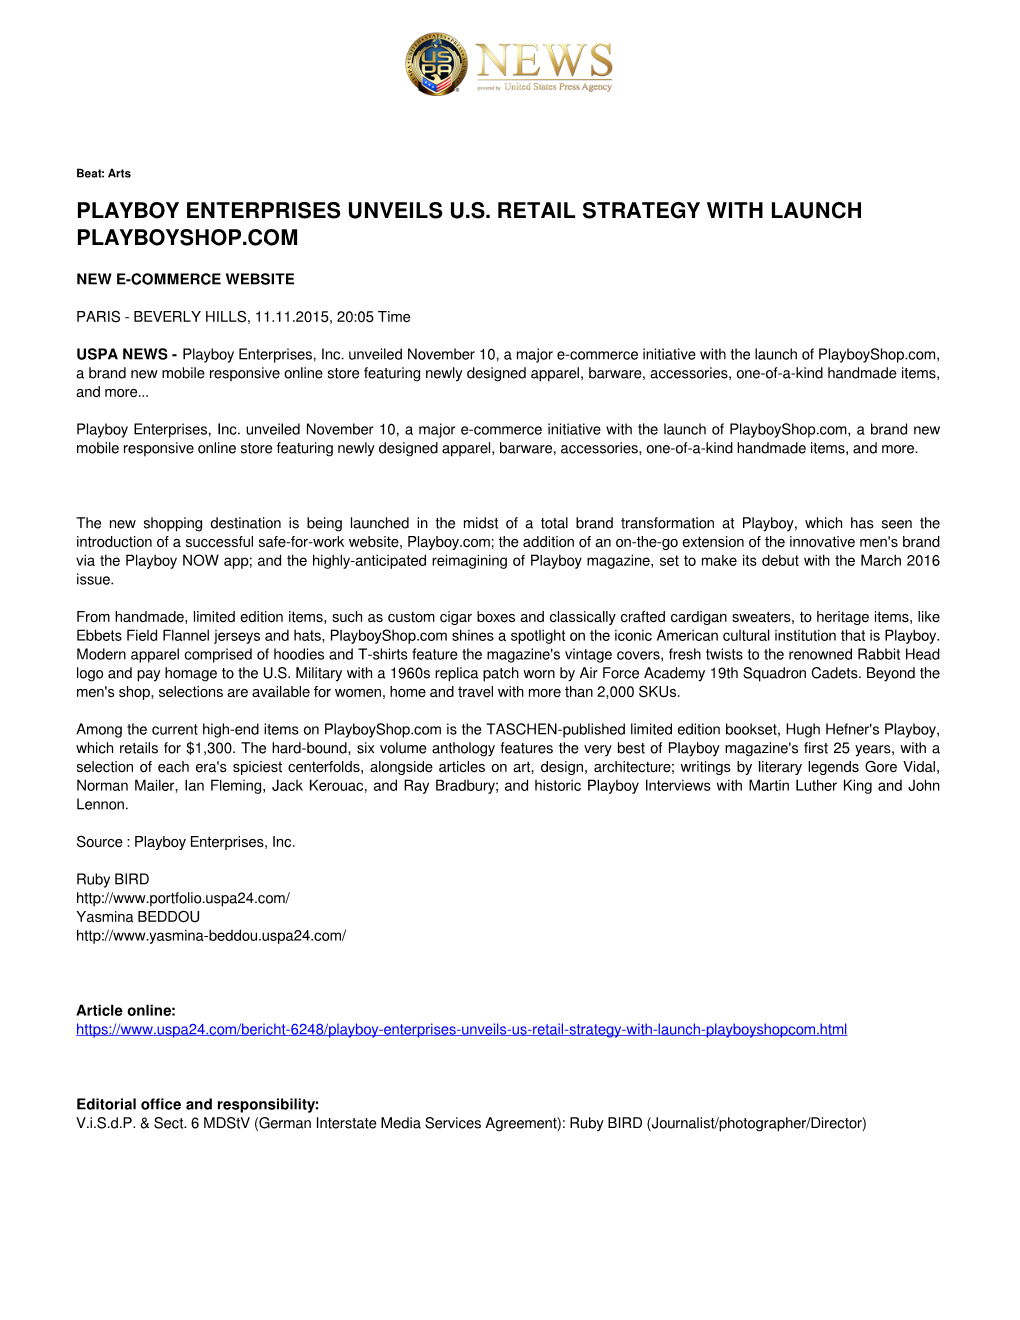 Playboy Enterprises Unveils U.S. Retail Strategy with Launch Playboyshop.Com